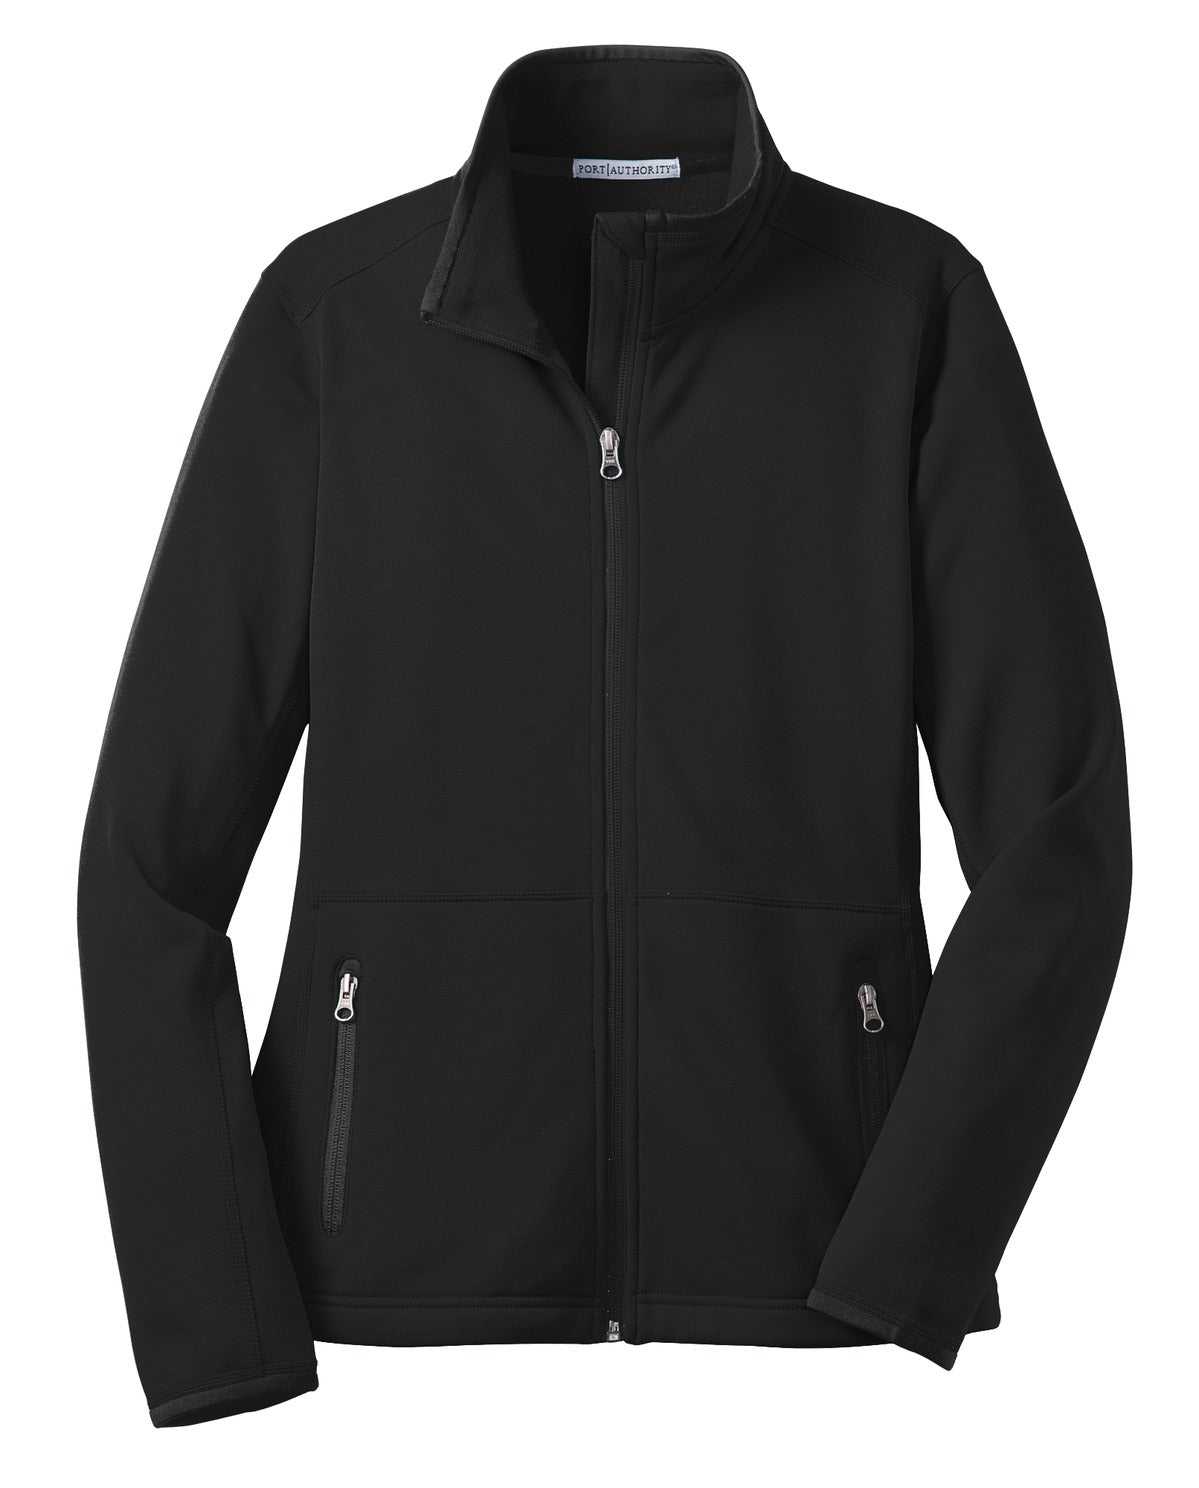 Port Authority L222 Ladies Pique Fleece Jacket - Black - HIT a Double - 5